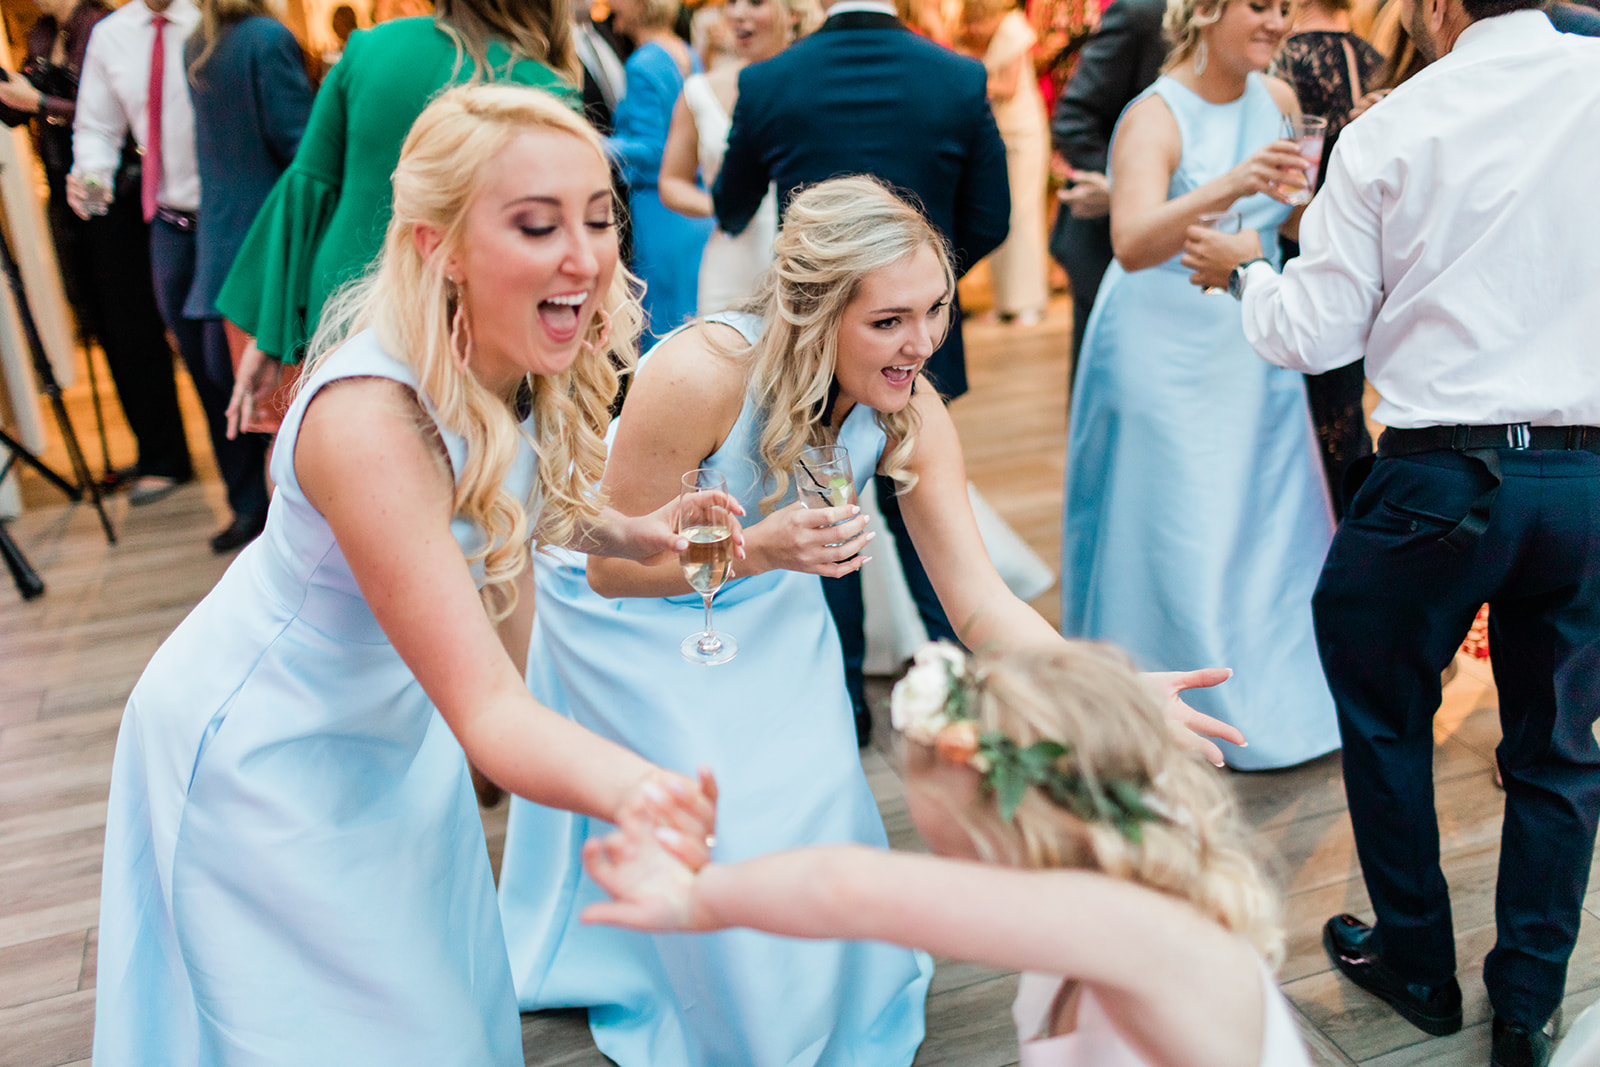 guests dance at wedding reception in Vail Colorado